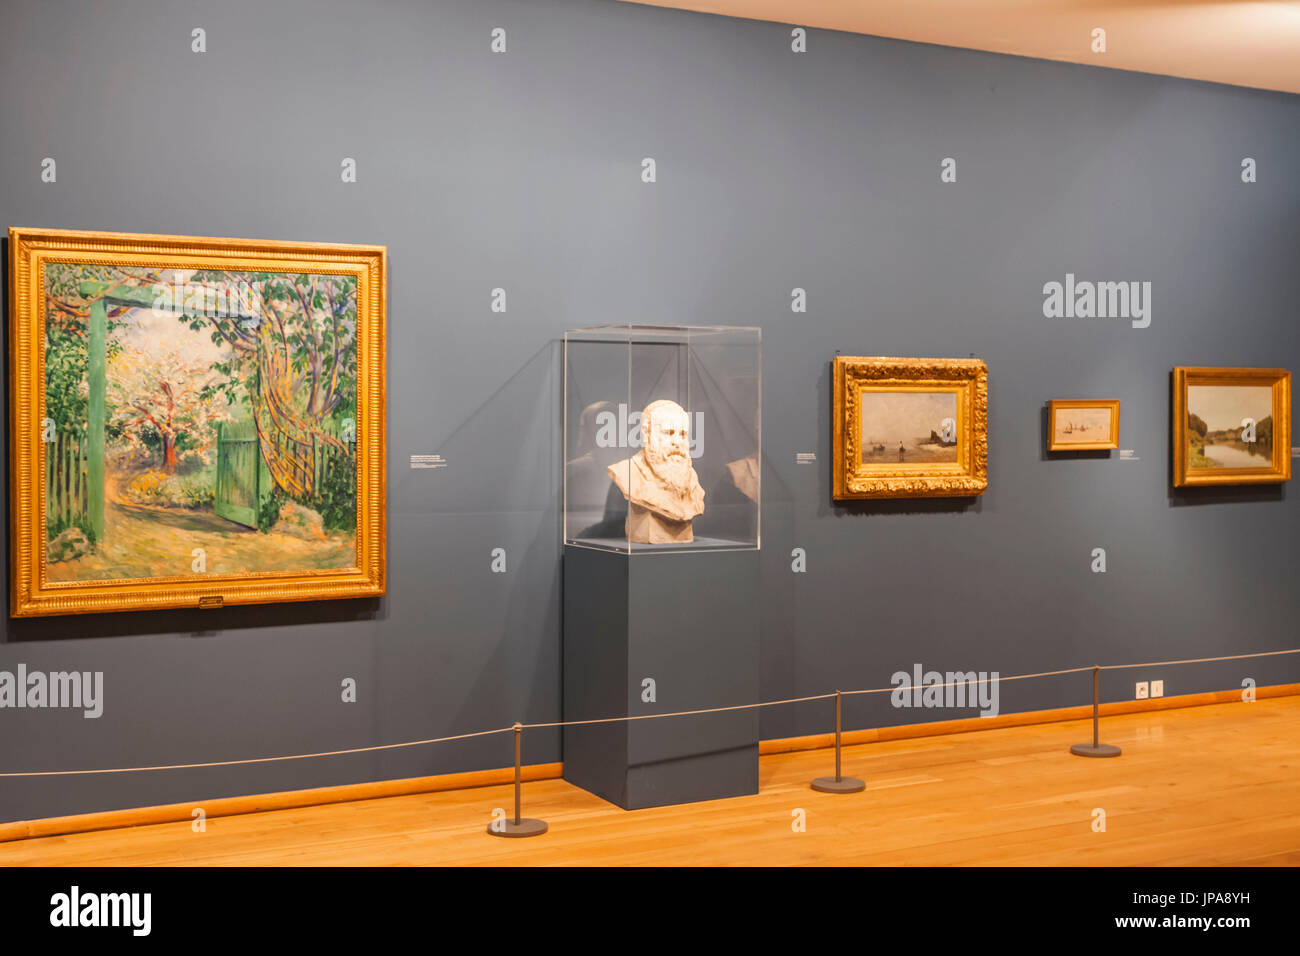 Museo impressionista immagini e fotografie stock ad alta risoluzione - Alamy